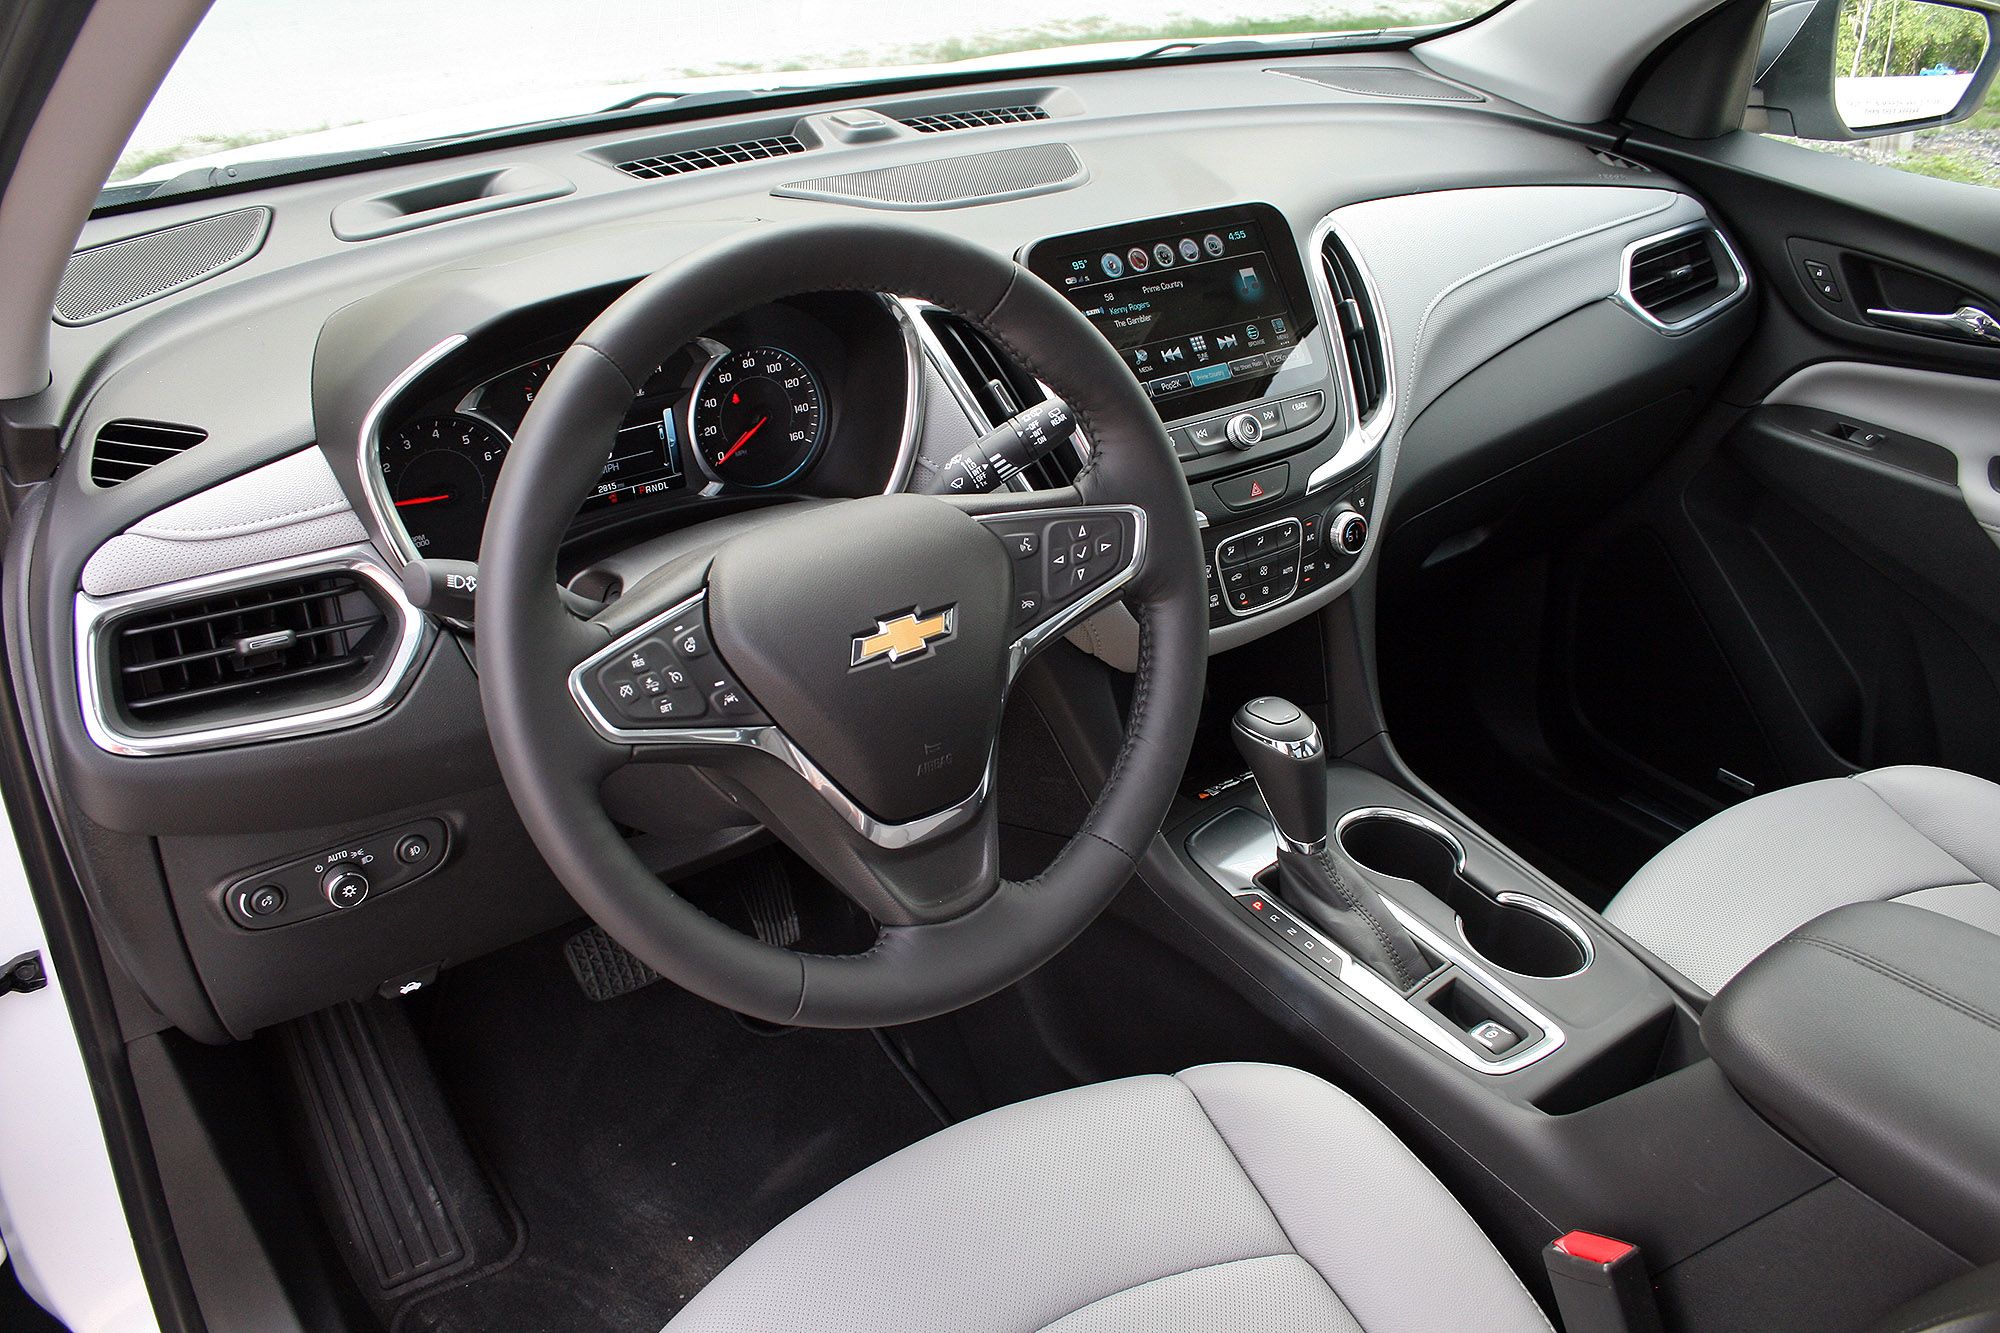 2018 Chevrolet Equinox – Driven